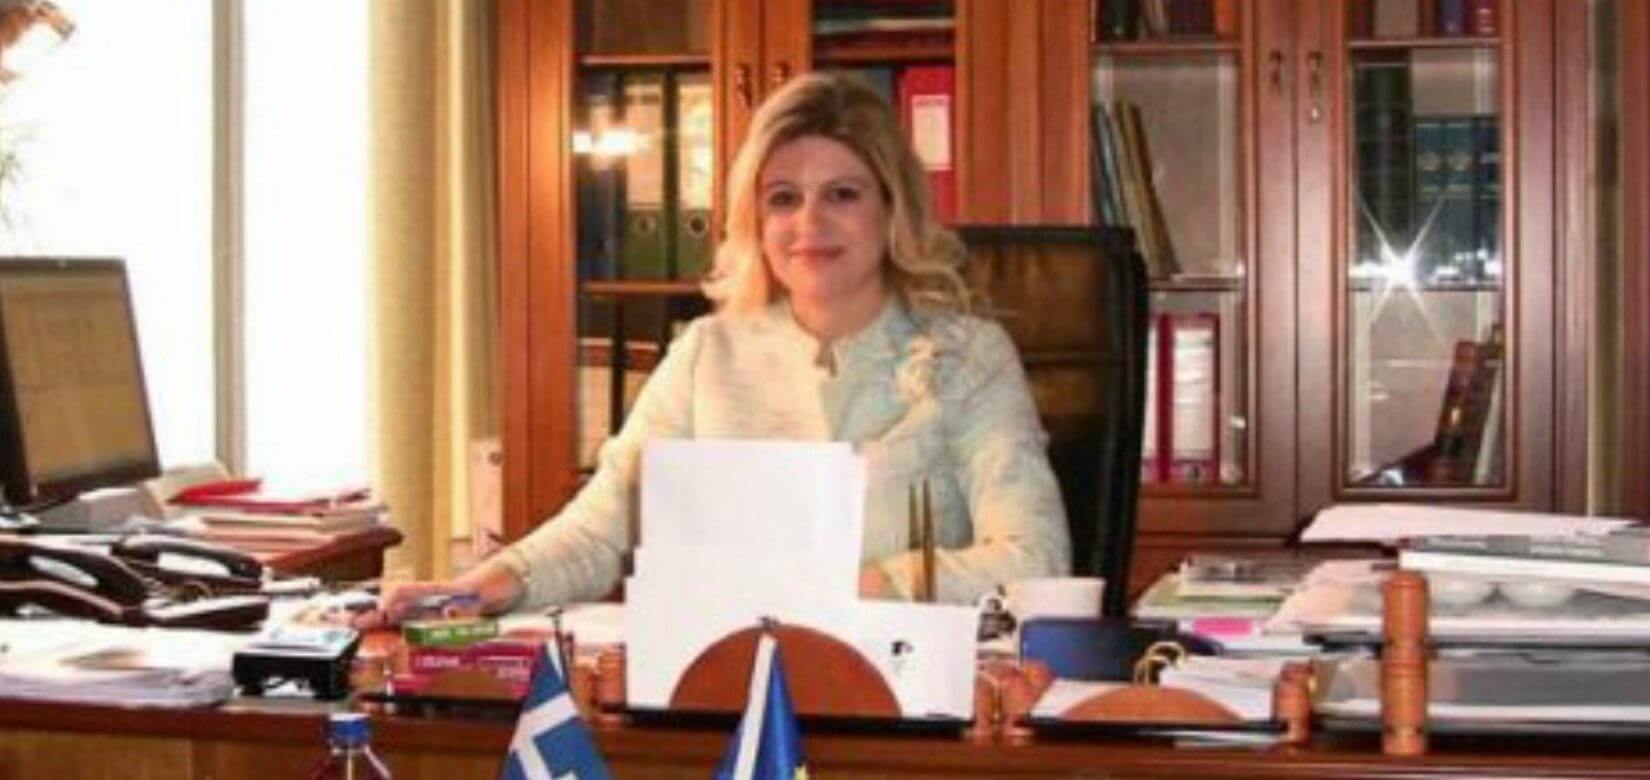 Αντωνία Αράχωβα: Η τέως διευθύντρια της Εθνικής Βιβλιοθήκης & υποψήφια ευρωβουλευτής αποκαλύπτει τα "υλικά" ενός καλού παιδικού βιβλίου!